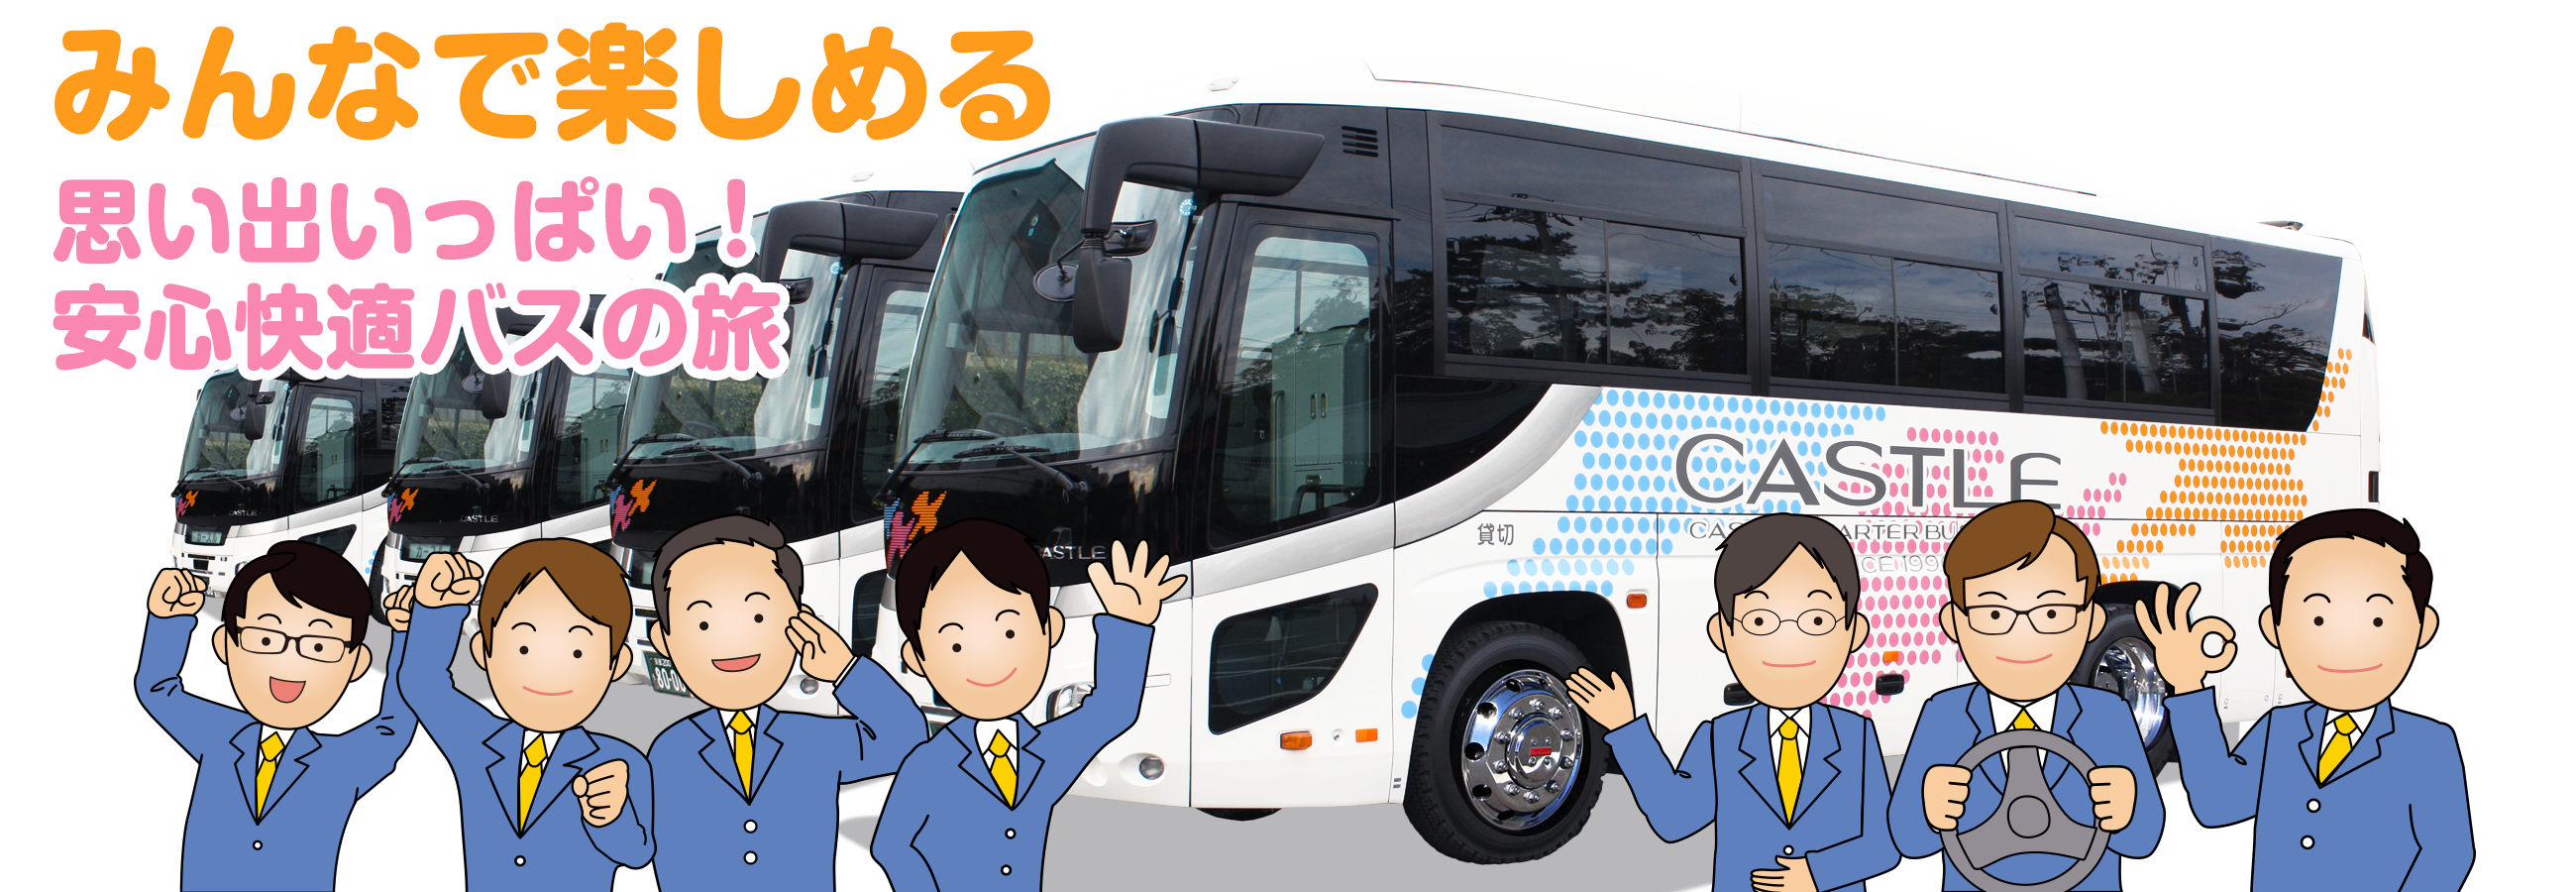 小型貸切バス・中型貸切バス・観光バスならカースルチャーターバス